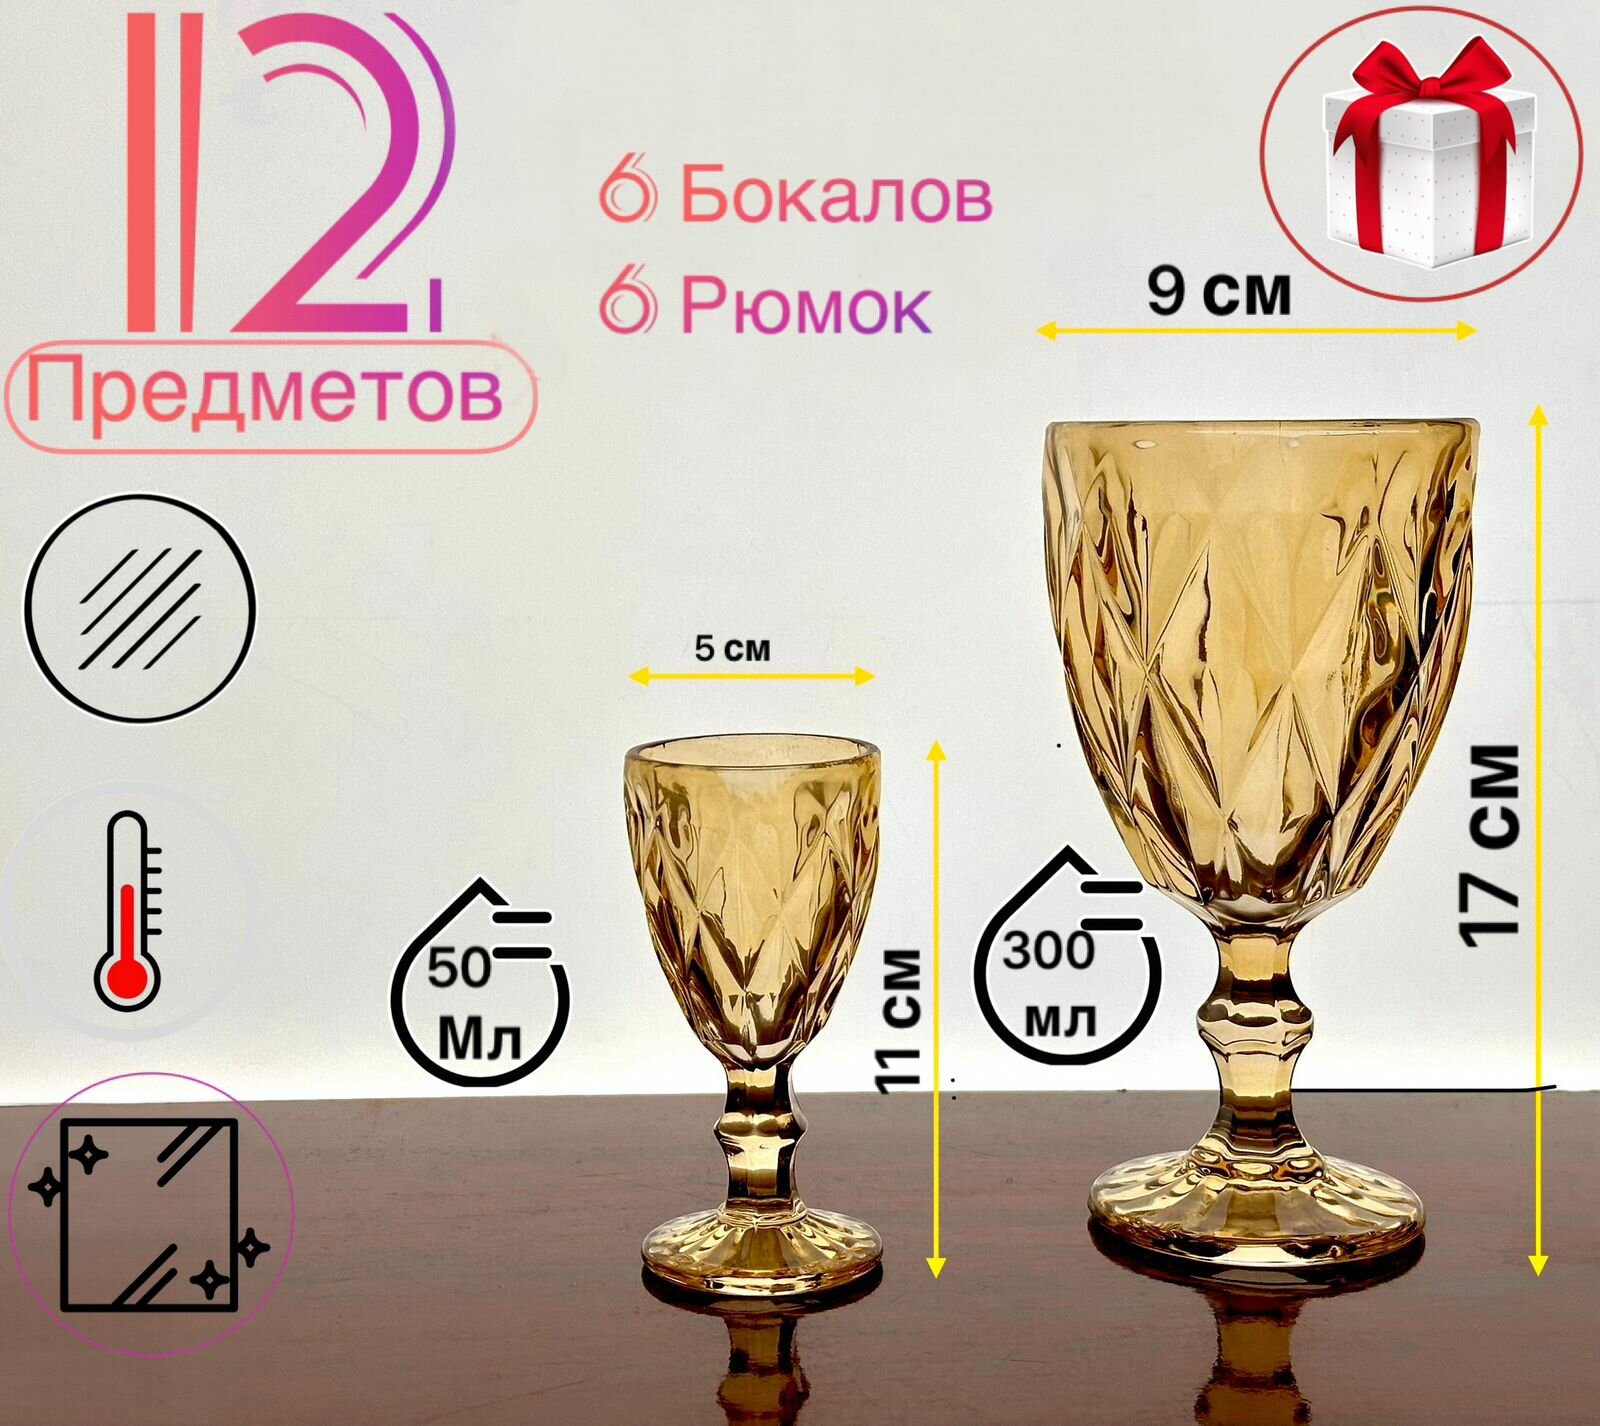 Набор бокалов и рюмок Посуда Мира из цветного стекла, 300 мл, 50 мл, 6+6 шт, Кубок, цвет Старое золото, Old Gold